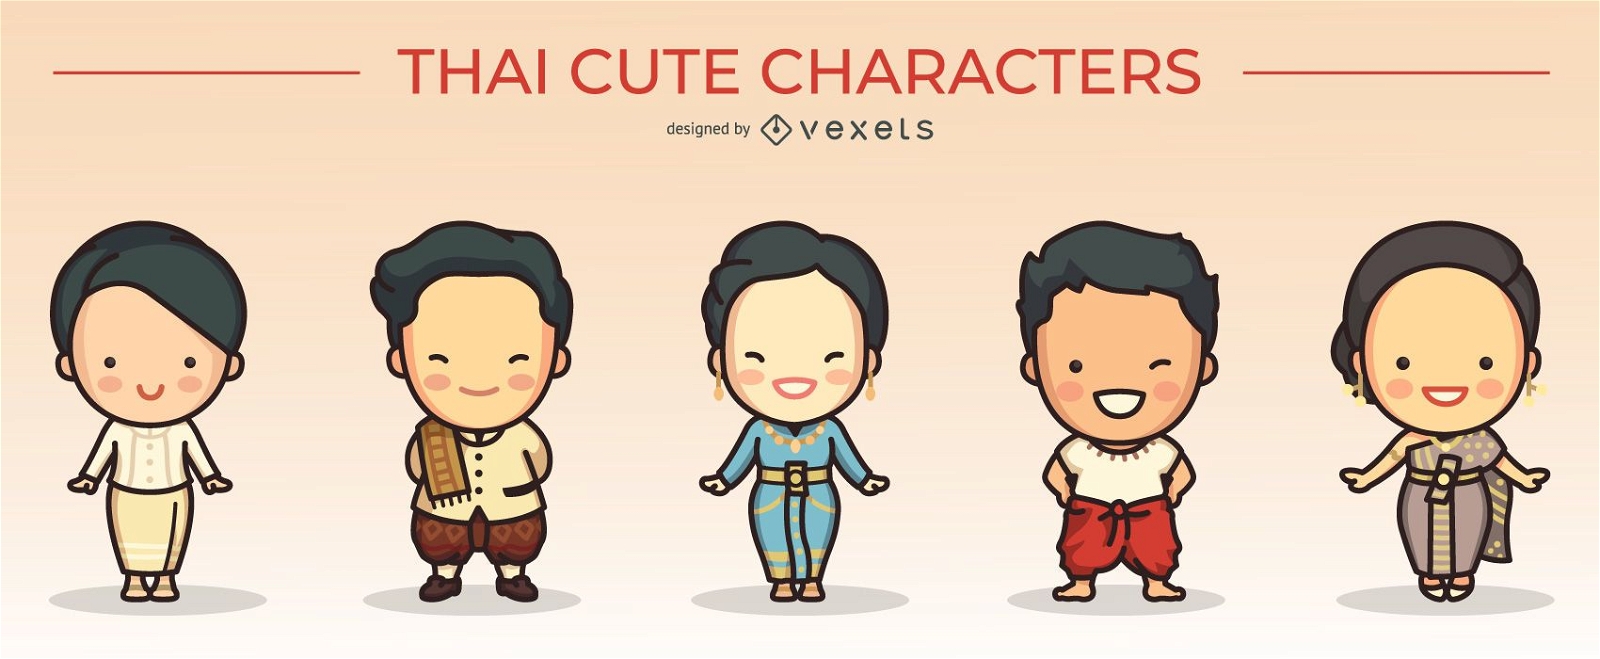 süße thailändische Charaktere gesetzt